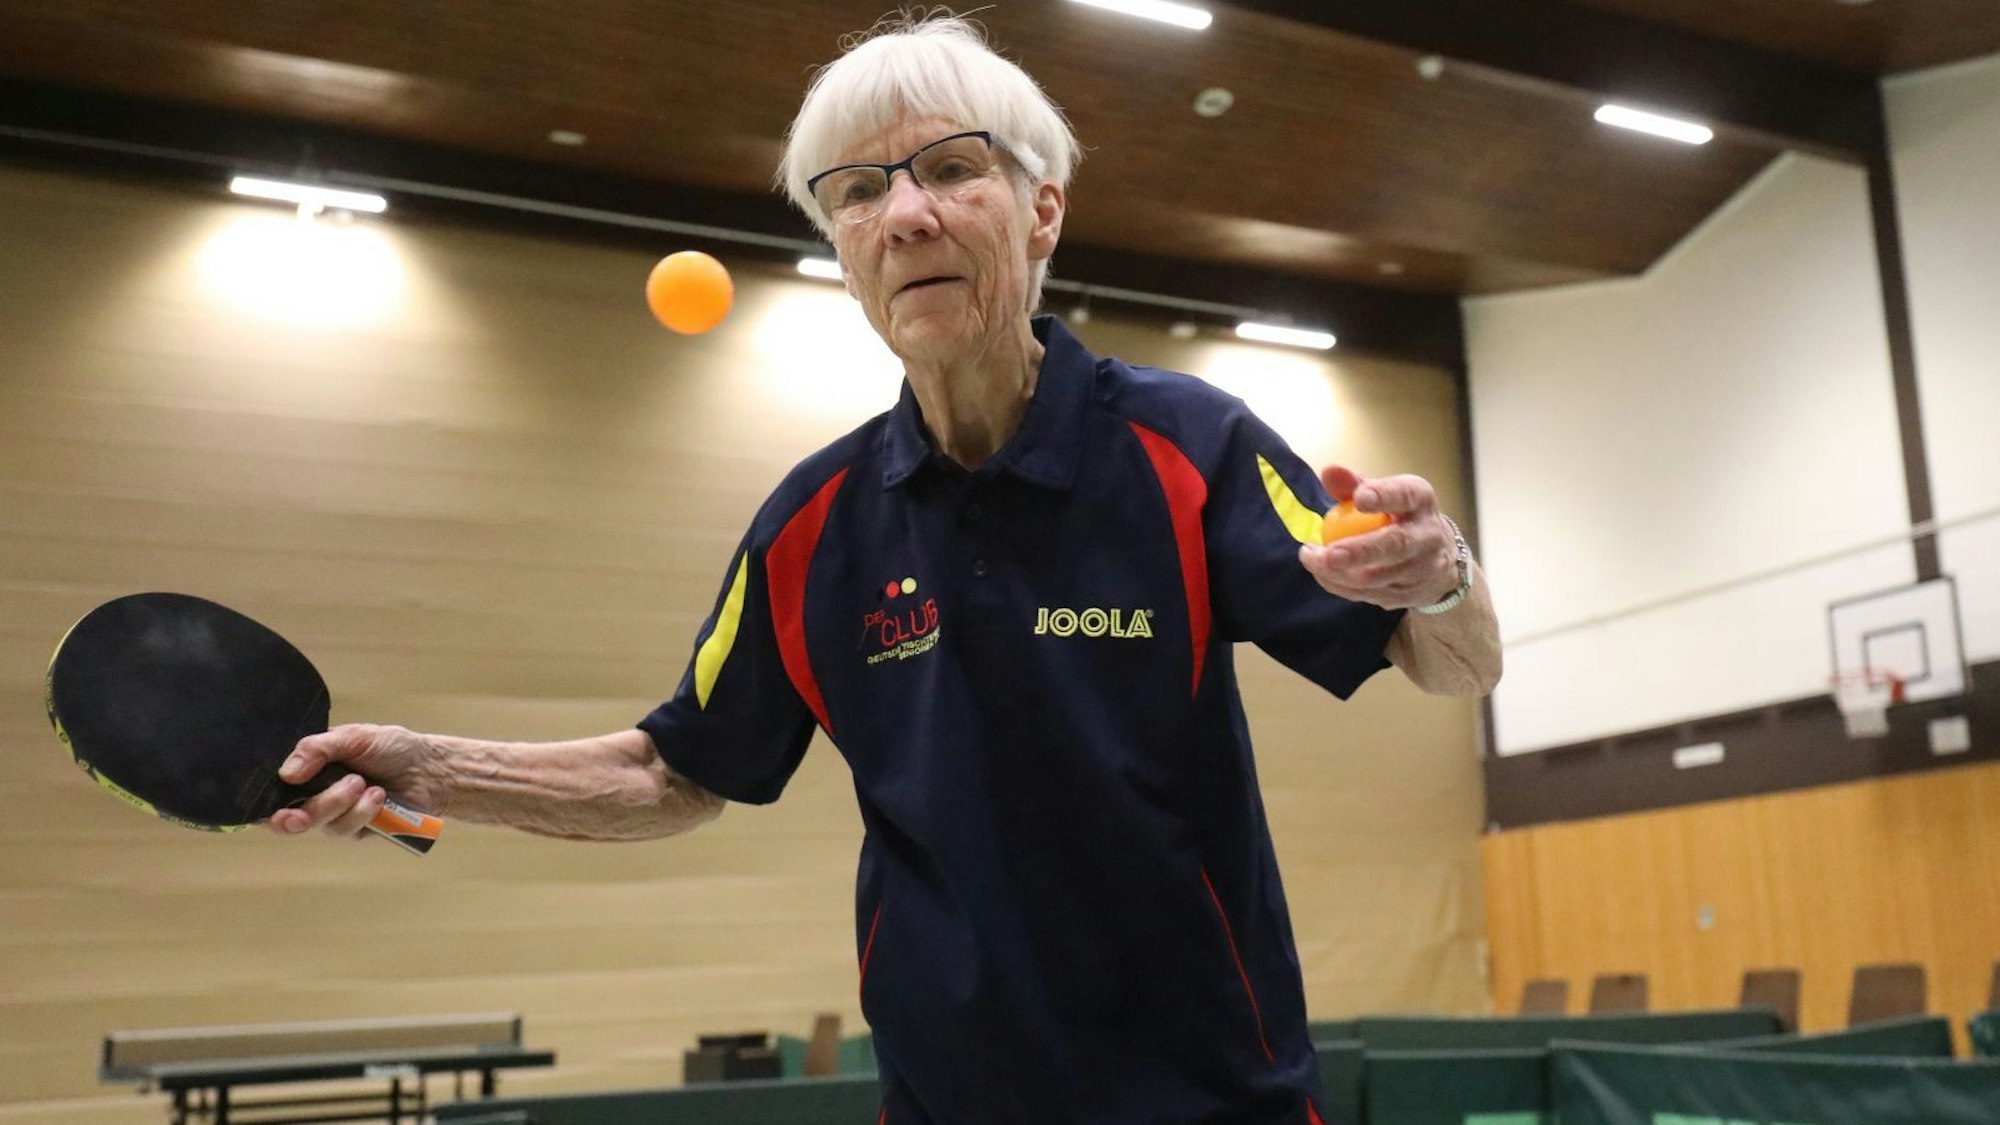 Heidi Wunner beim Tischtennisspielen in Sportkleidung mit Brille